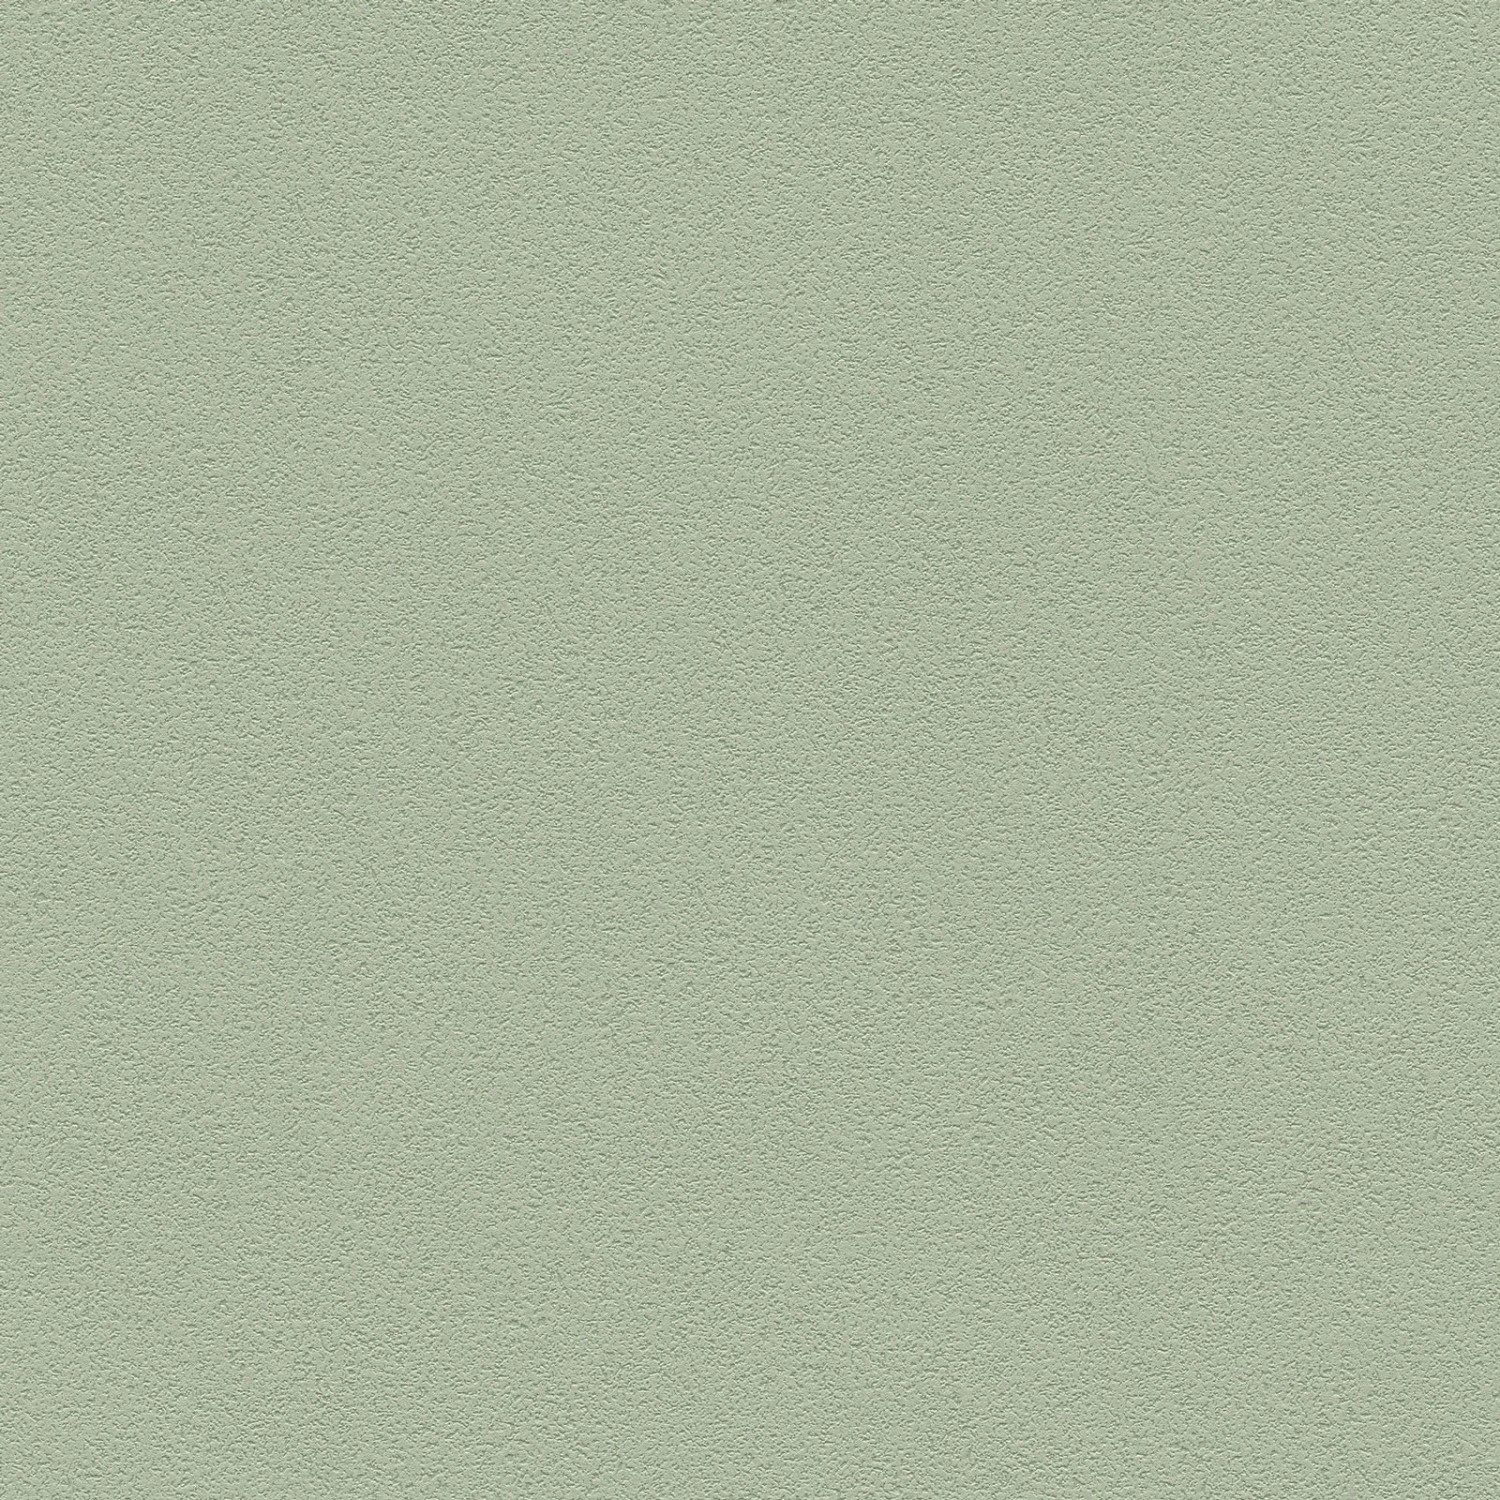 Bricoflor Uni Tapete in Salbeigrün Moderne Einfarbige Vliestapete in Olivgrün Ideal für Wohnzimmer und Büro Salbei Wandt